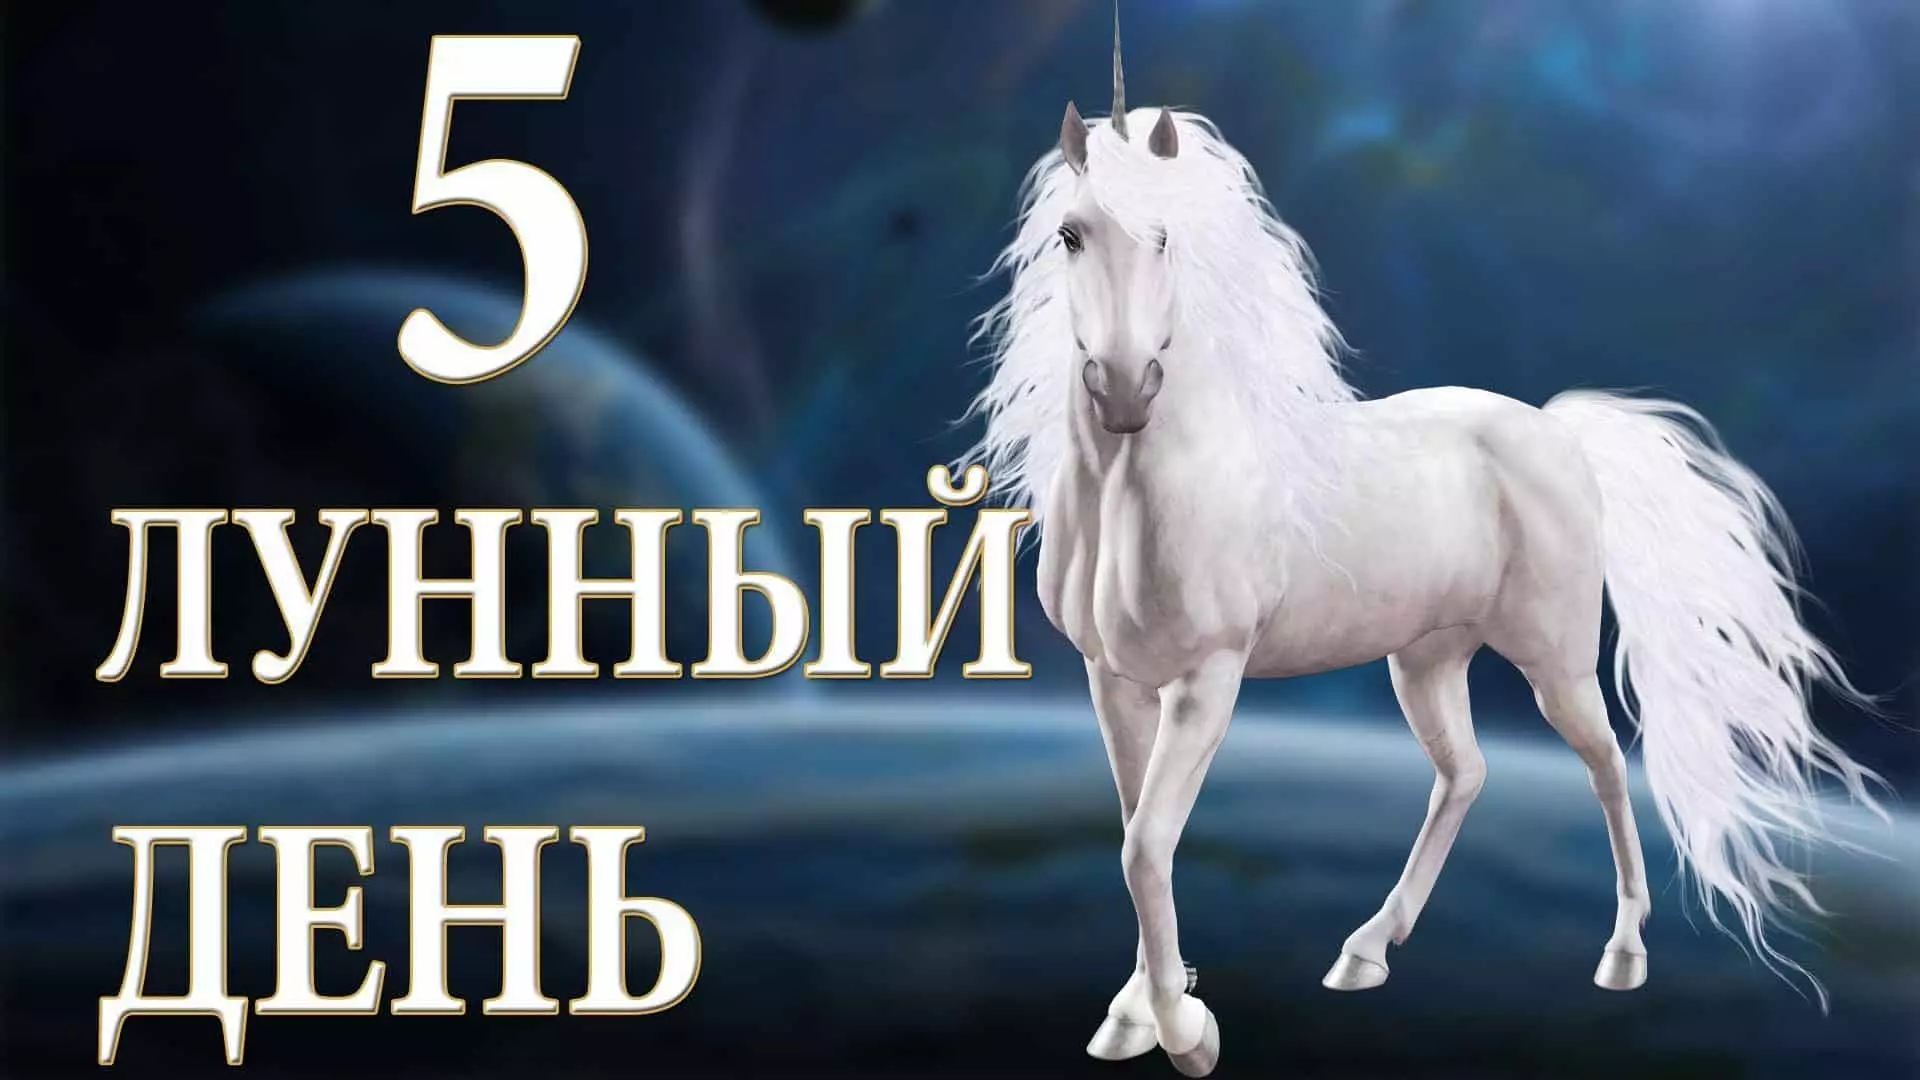 5 Lunar Day: Hans Unicorn Symbol